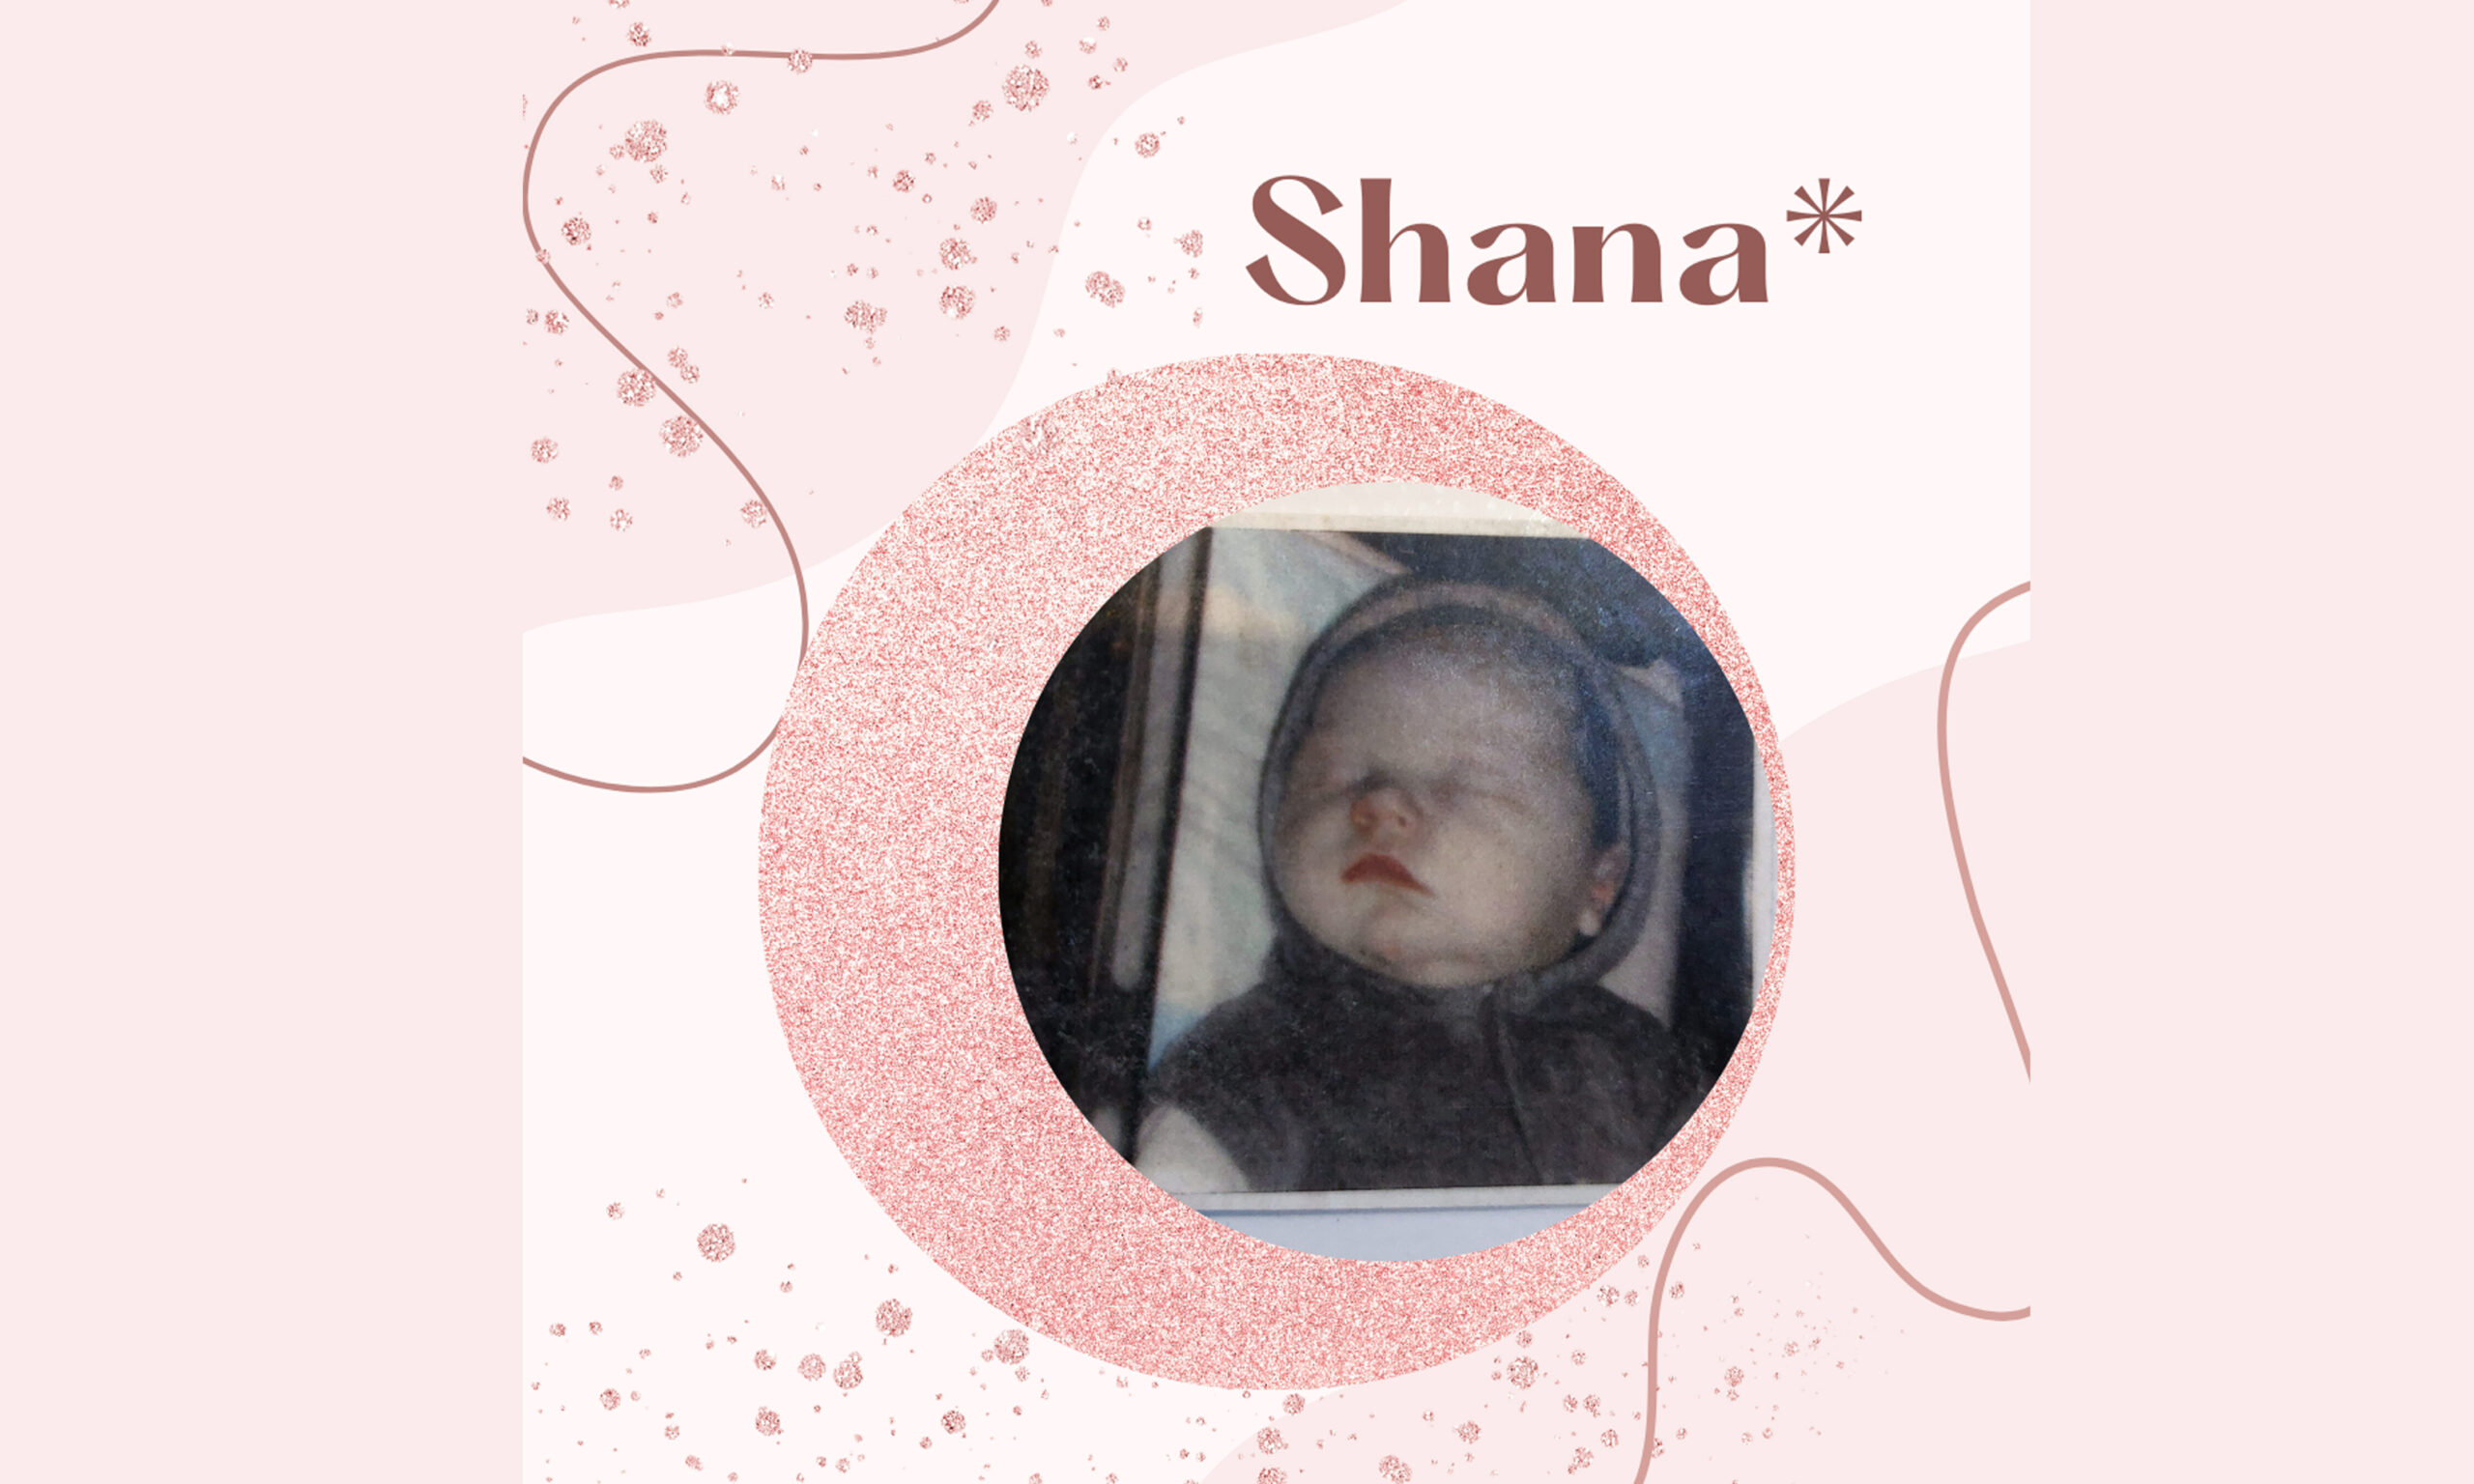 Shana*